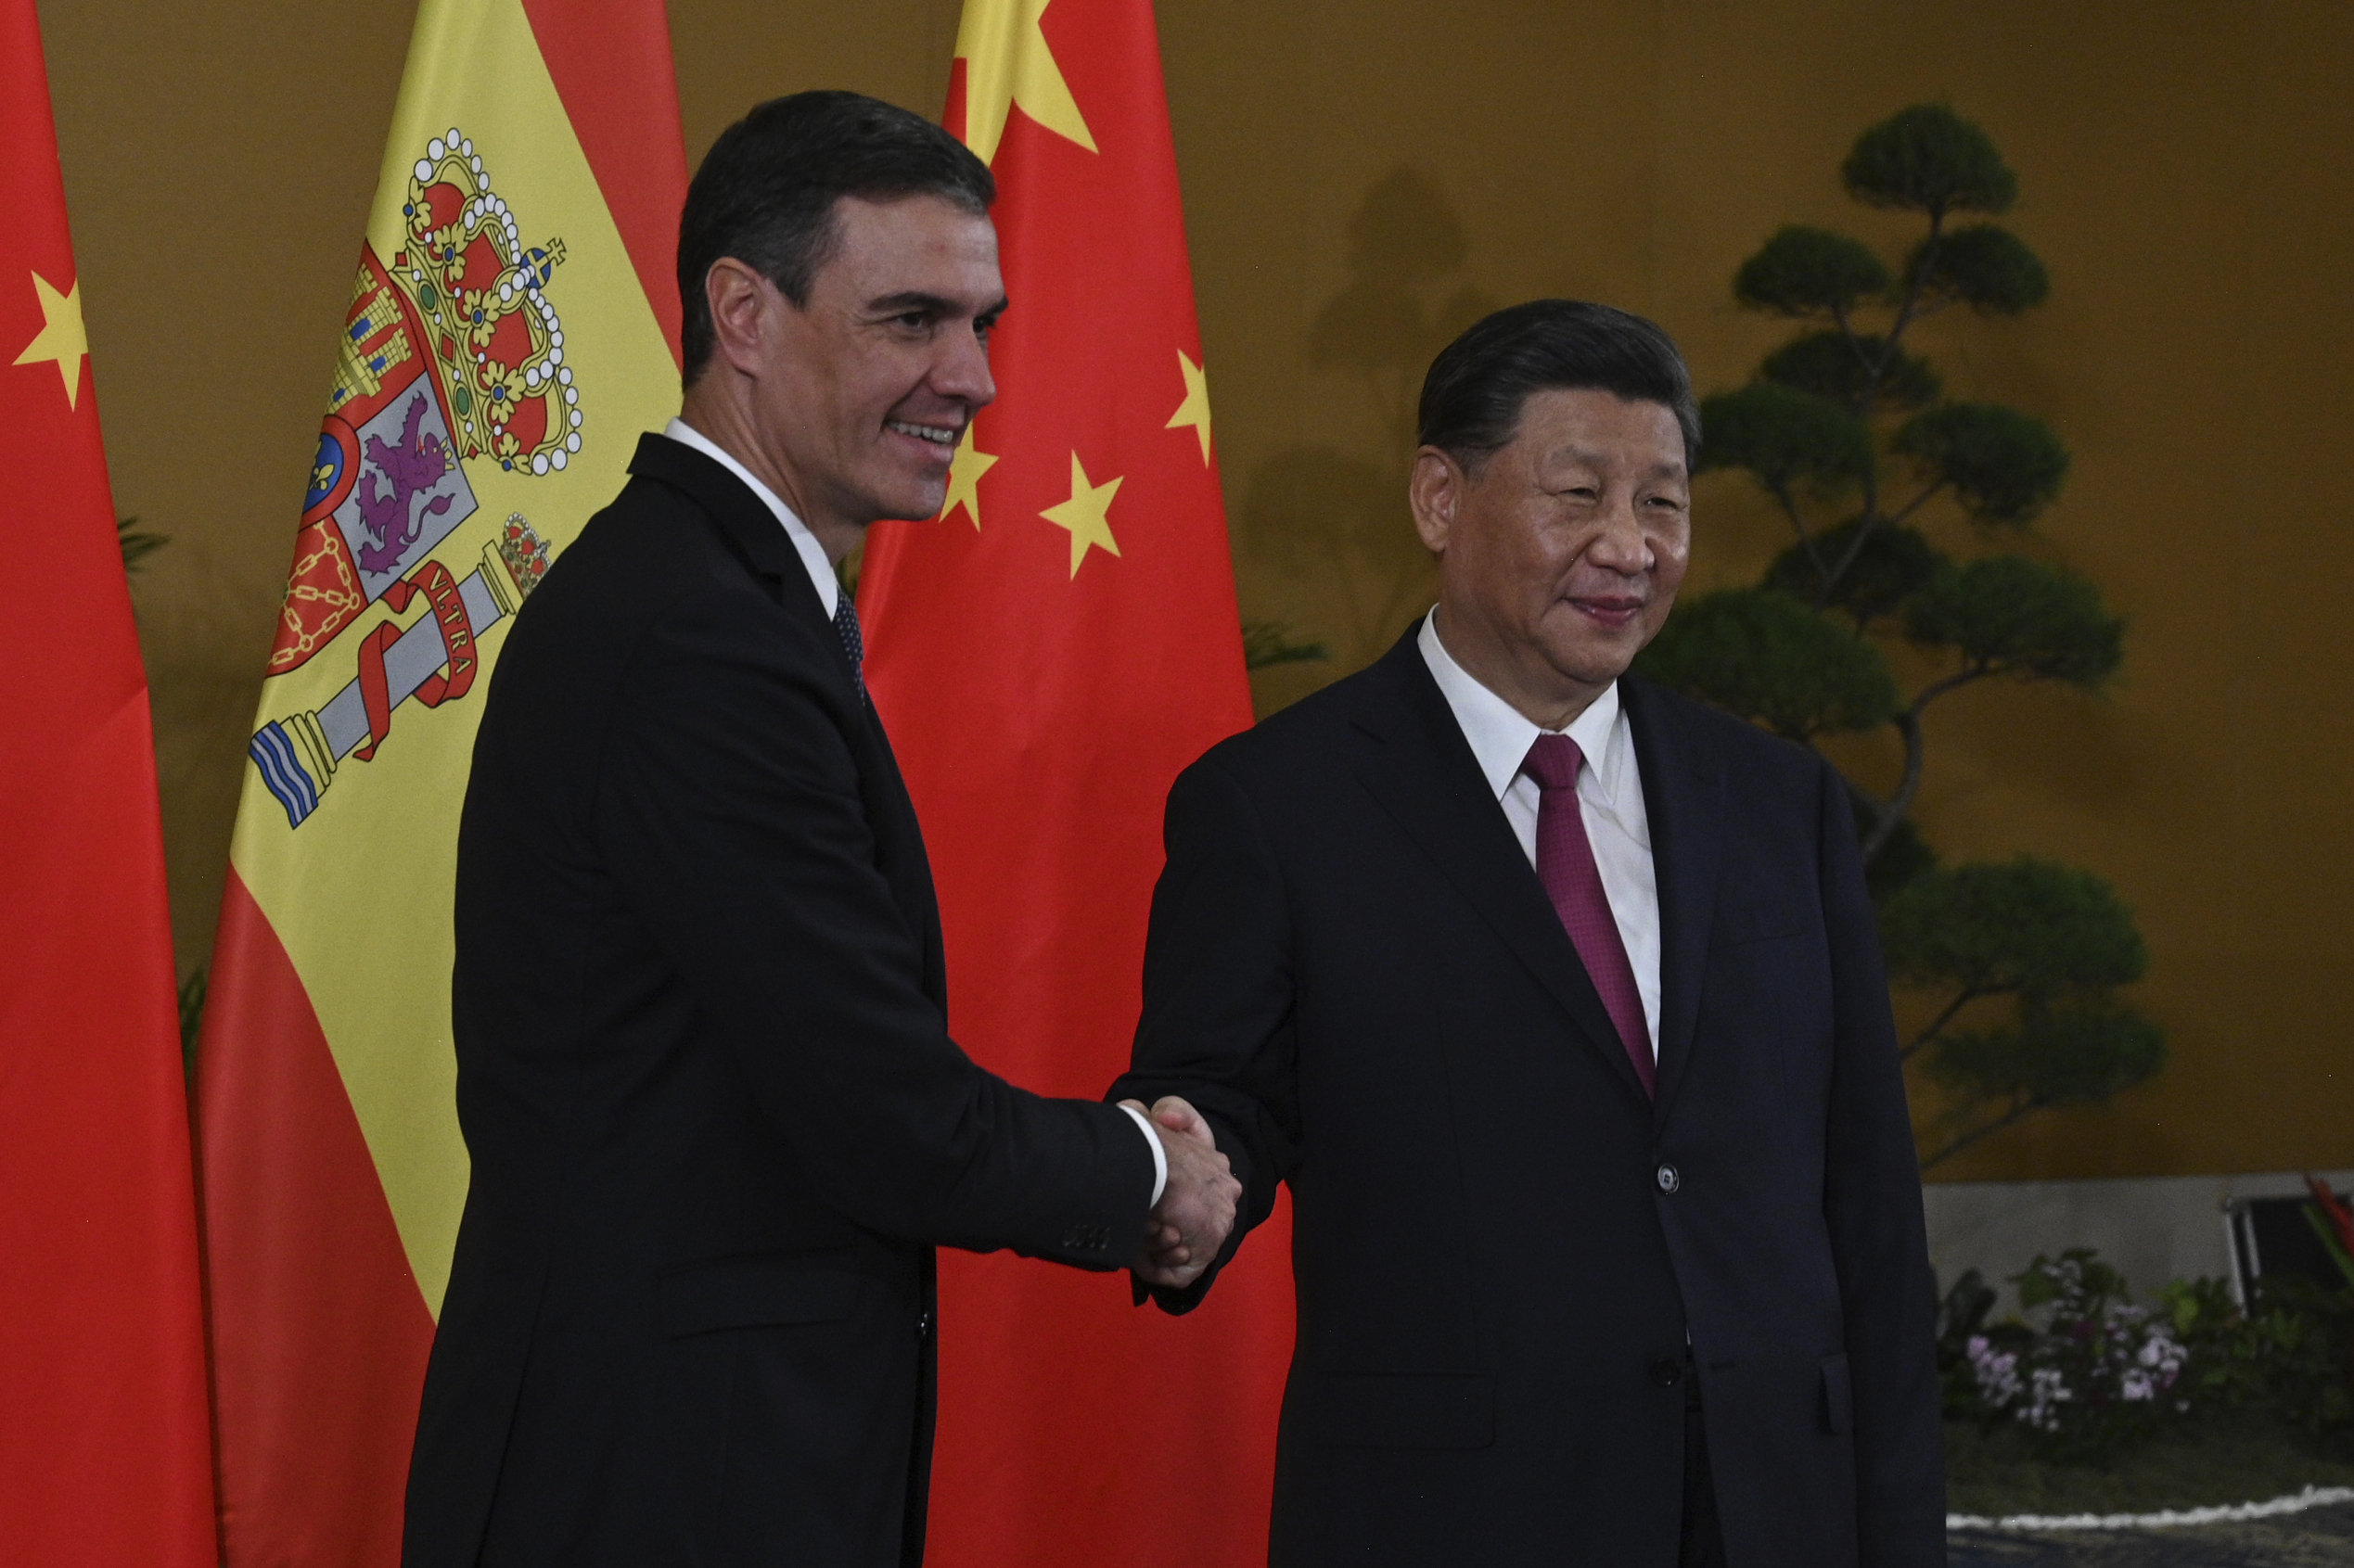 Pedro Sánchez y Xi Jinping, durante la reunión del G-20 en Balí